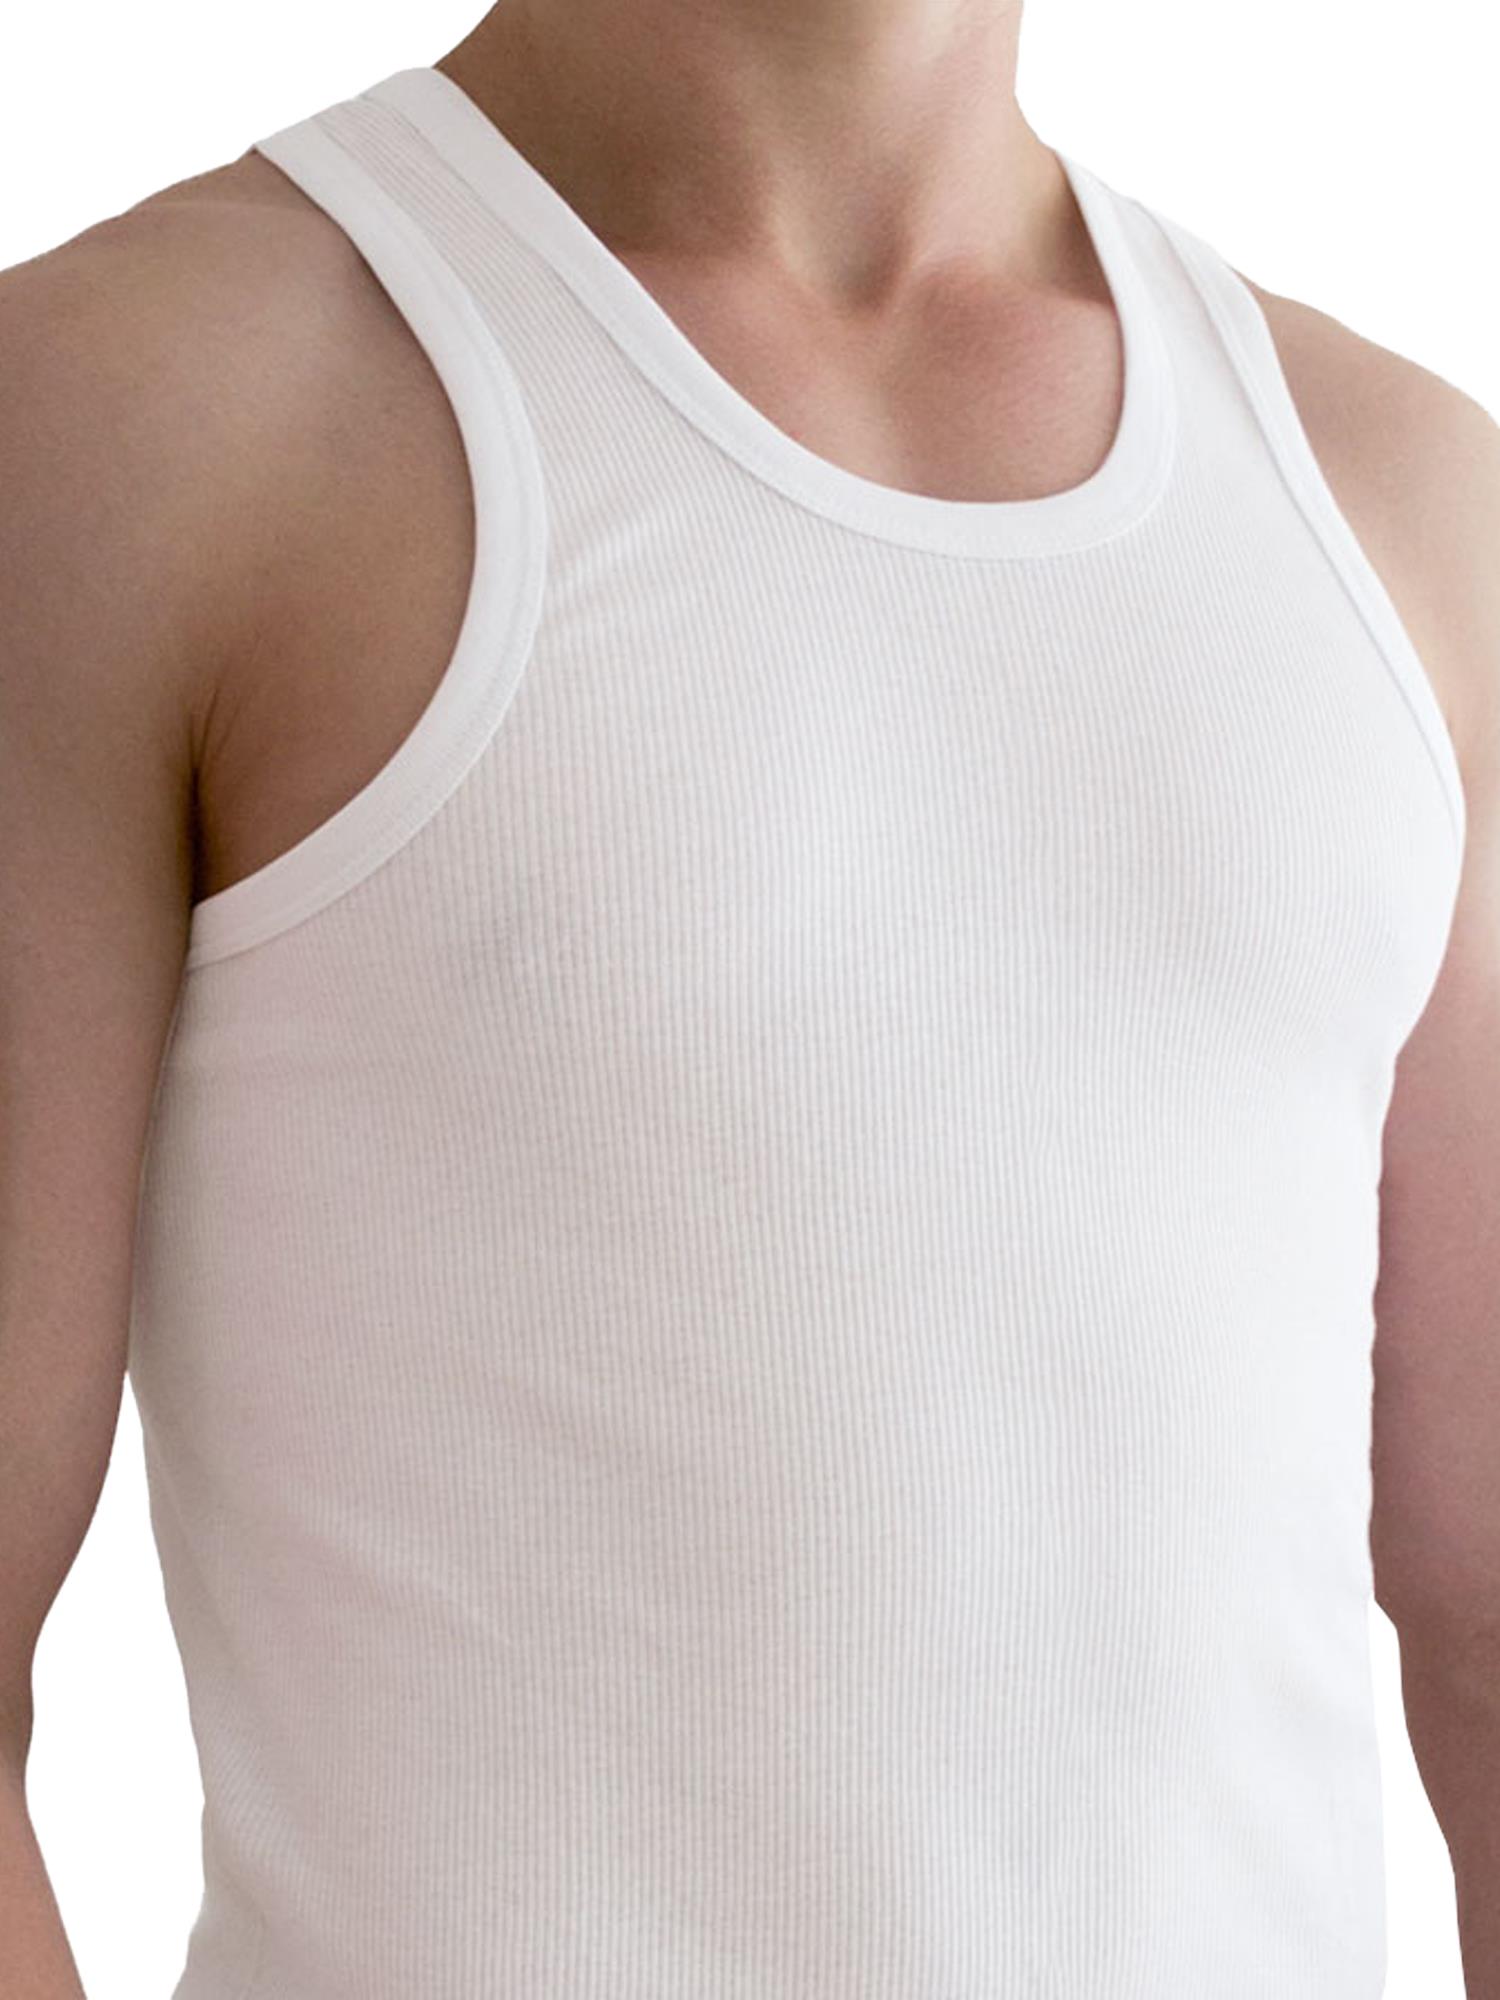 Bild von 5 Stück Herren-Unterhemd Doppelripp Weiß